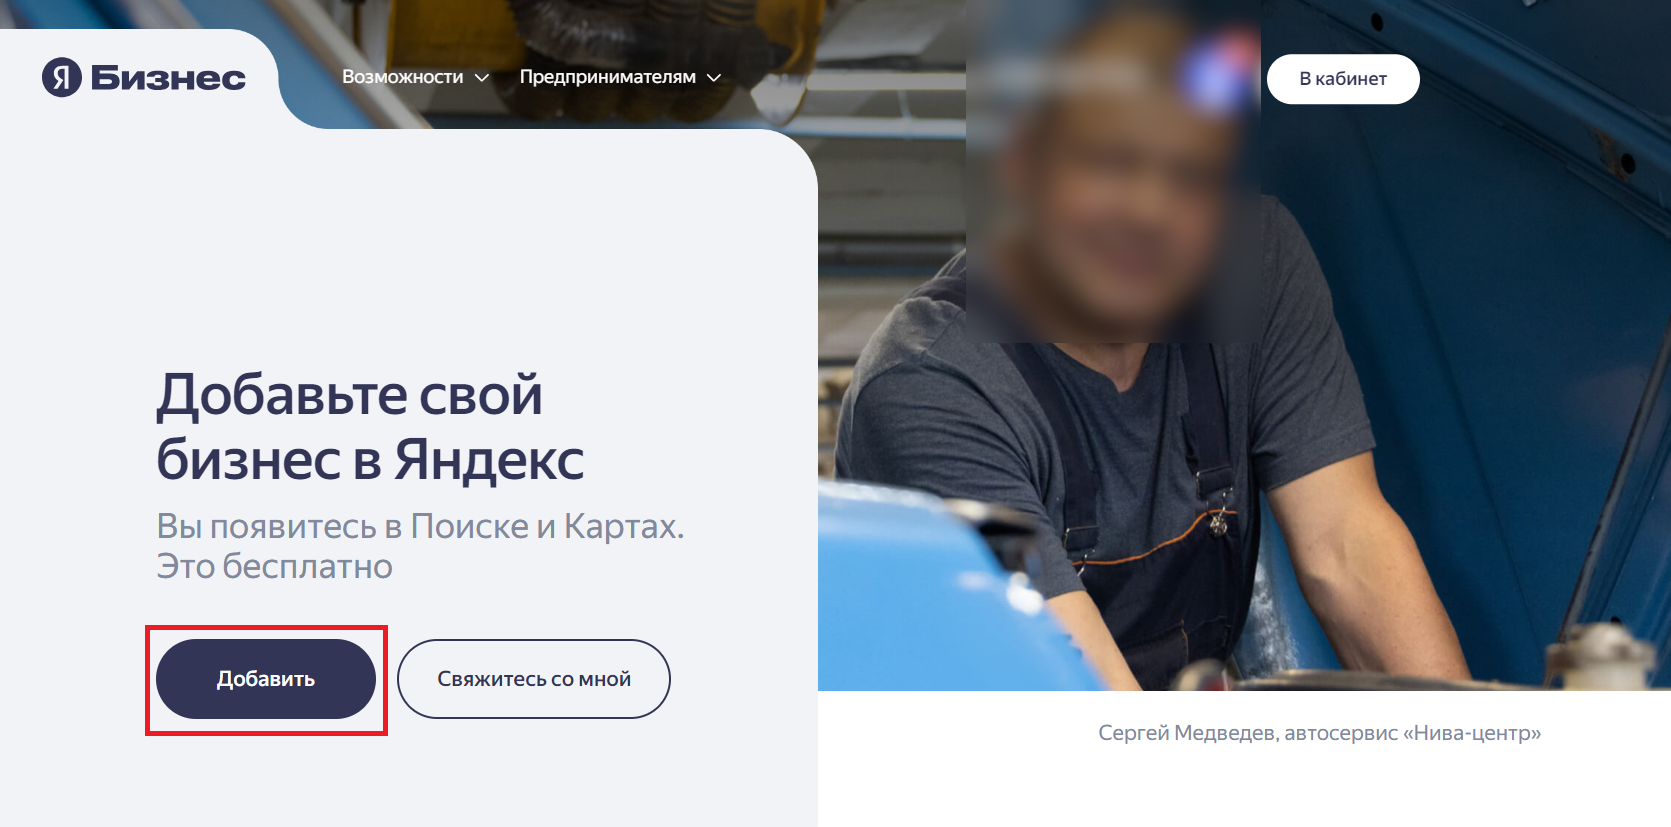 Как добавить свою компанию в Яндекс Бизнес